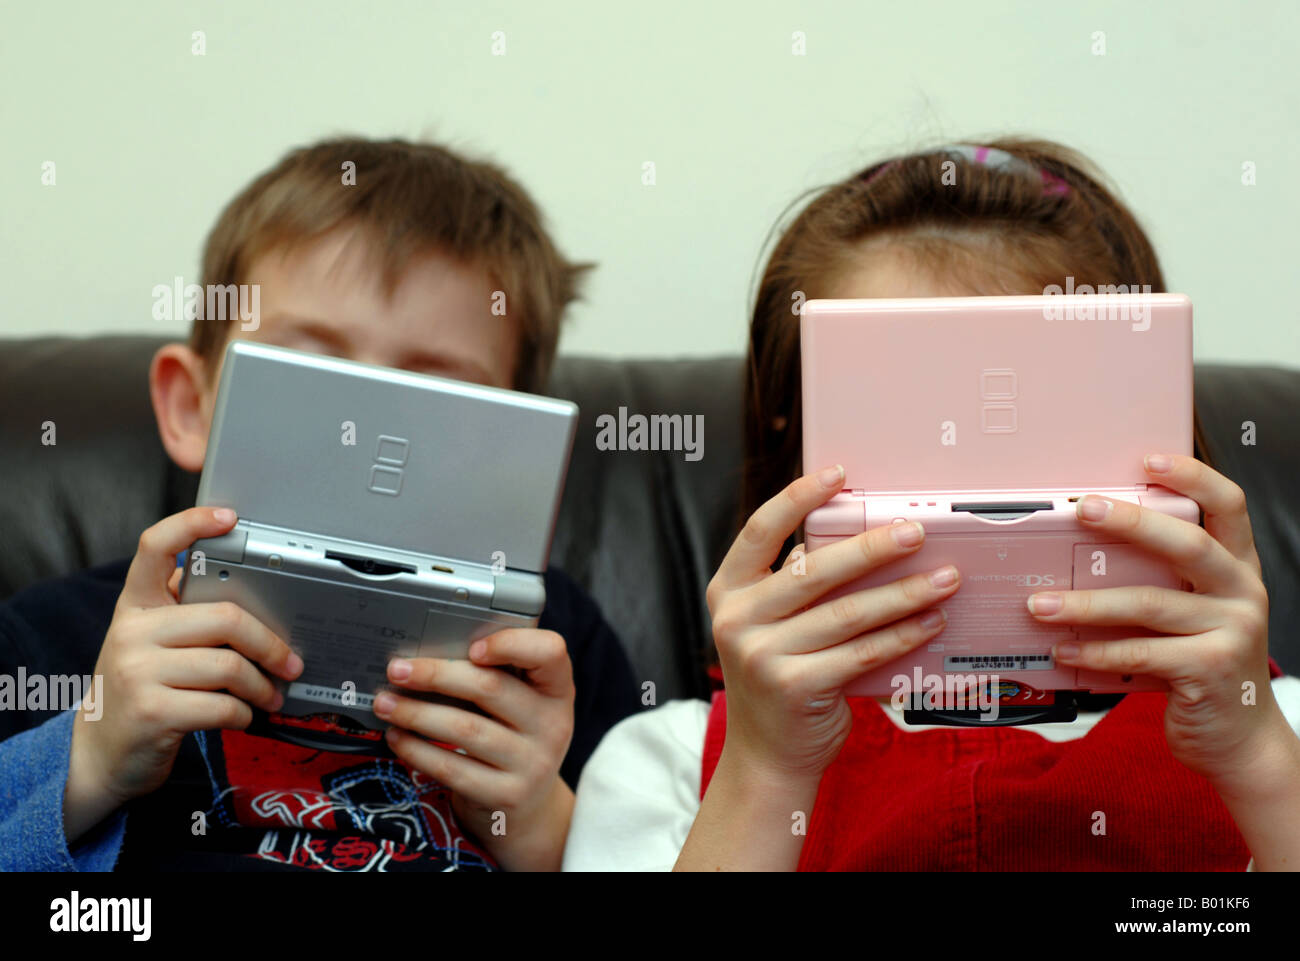 Les enfants jouer Nintendo DS lite jeu vidéo Banque D'Images